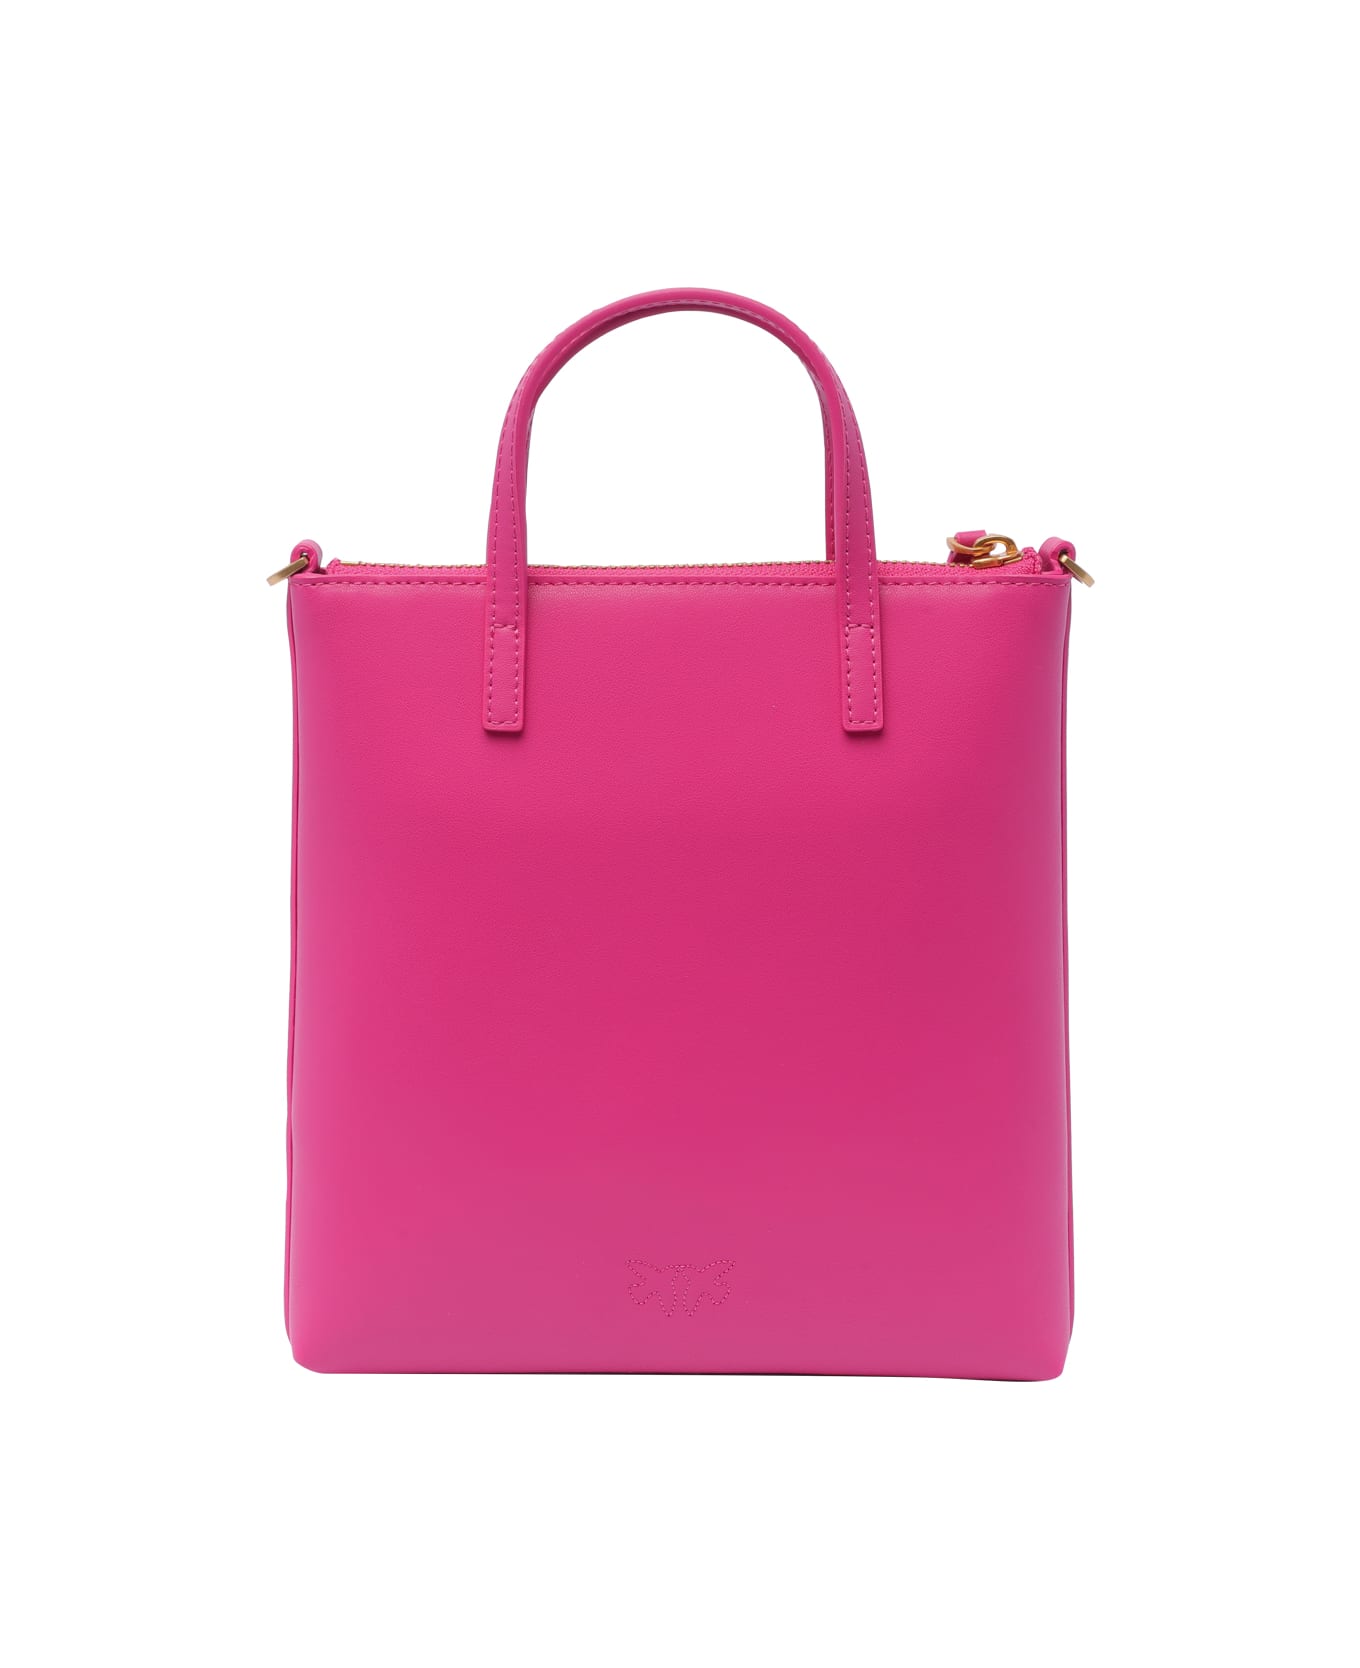 Pinko Mini Shopper Handbag - Fuchsia